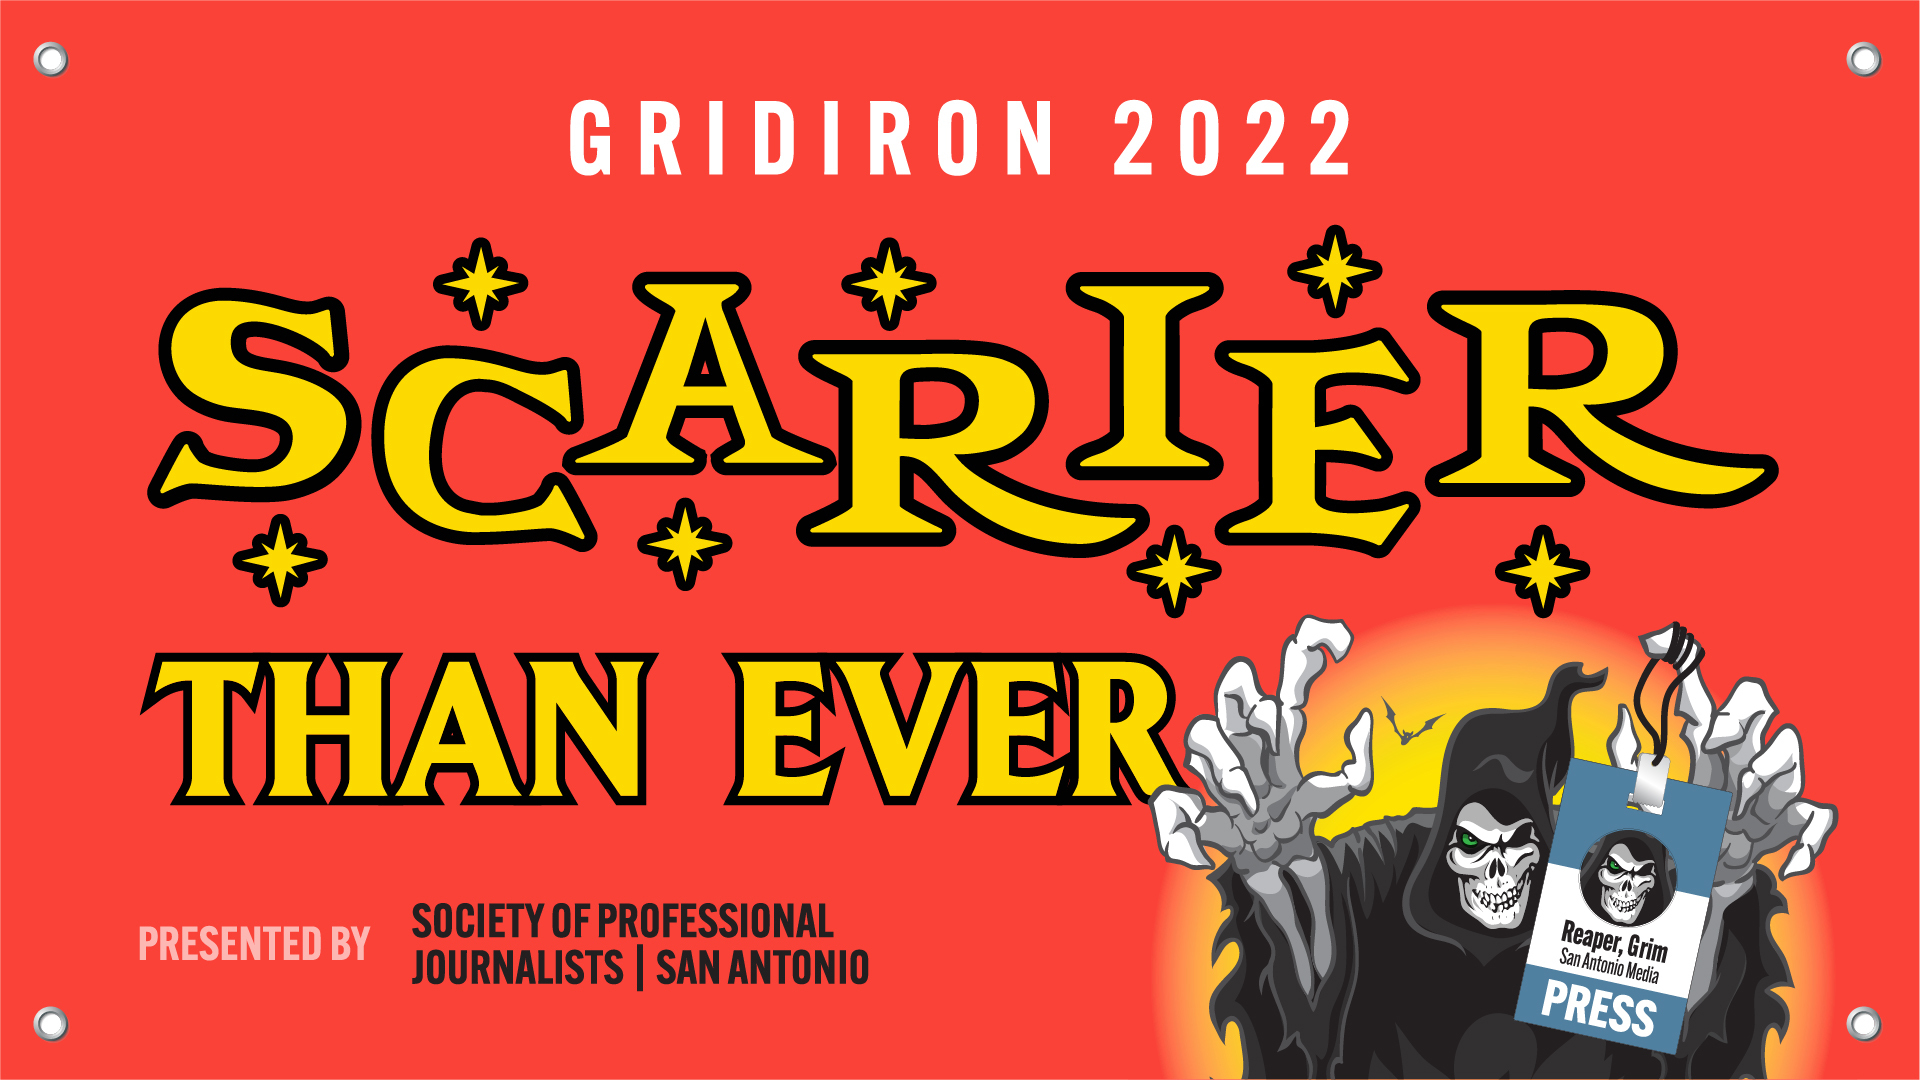 Gridiron 2022 Scarier Than Ever!, San Antonio, Texas, United States